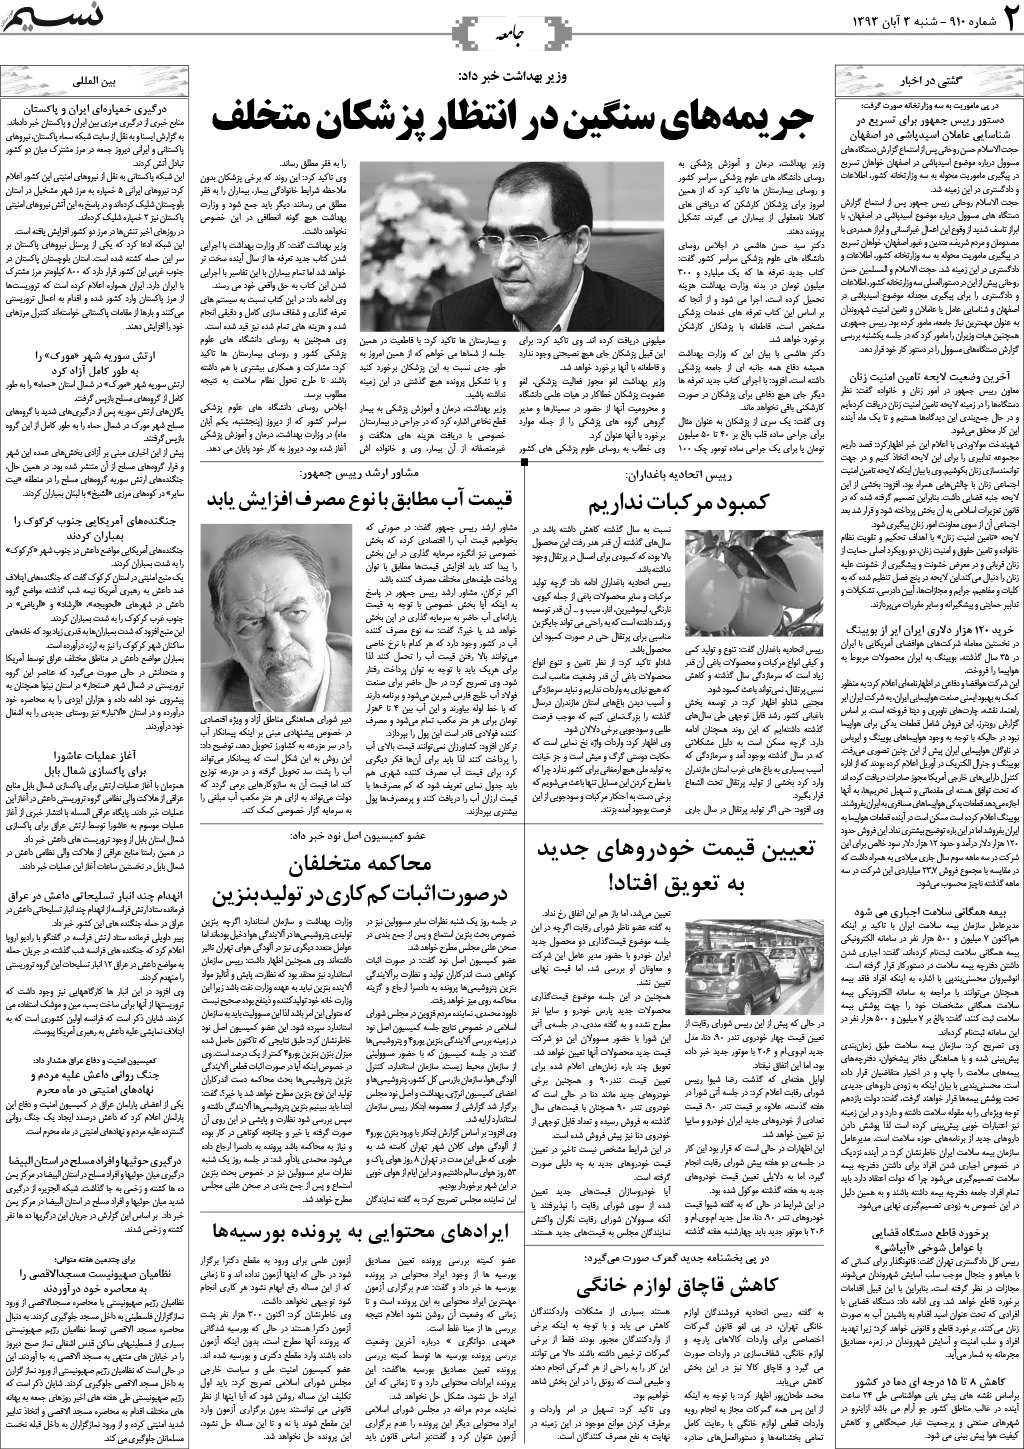 صفحه جامعه روزنامه نسیم شماره 910